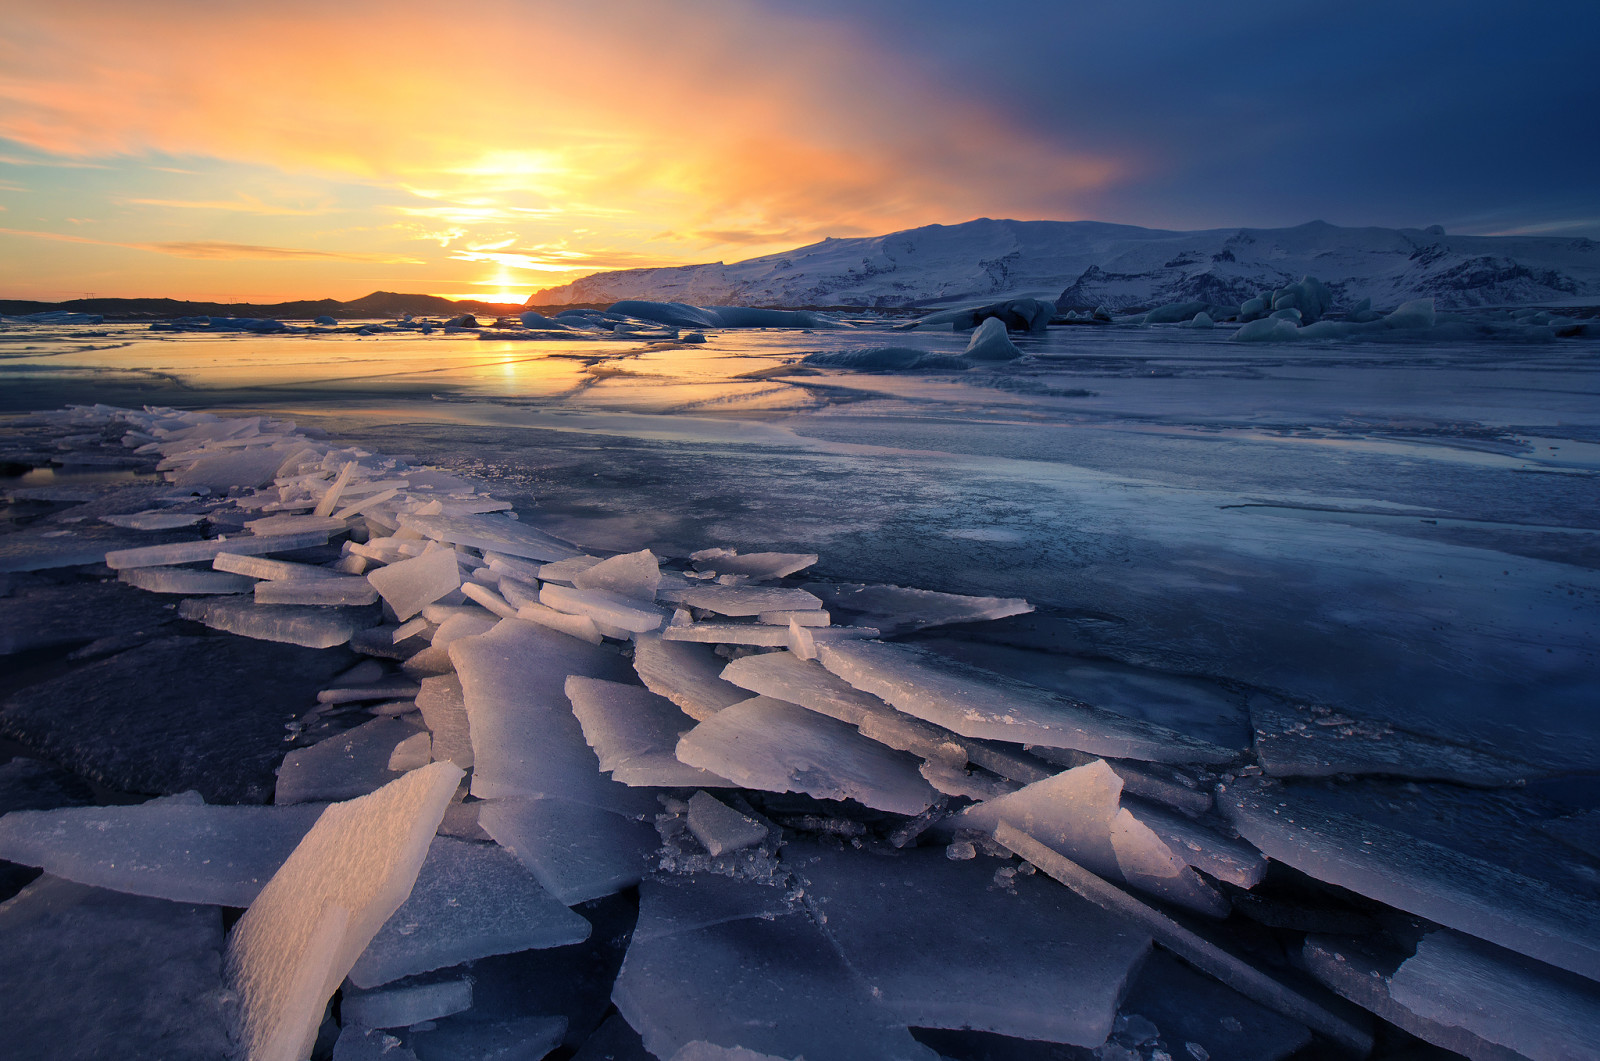 빙, 겨울, 풍경, 아이슬란드, 빙하, 석양, 얼다